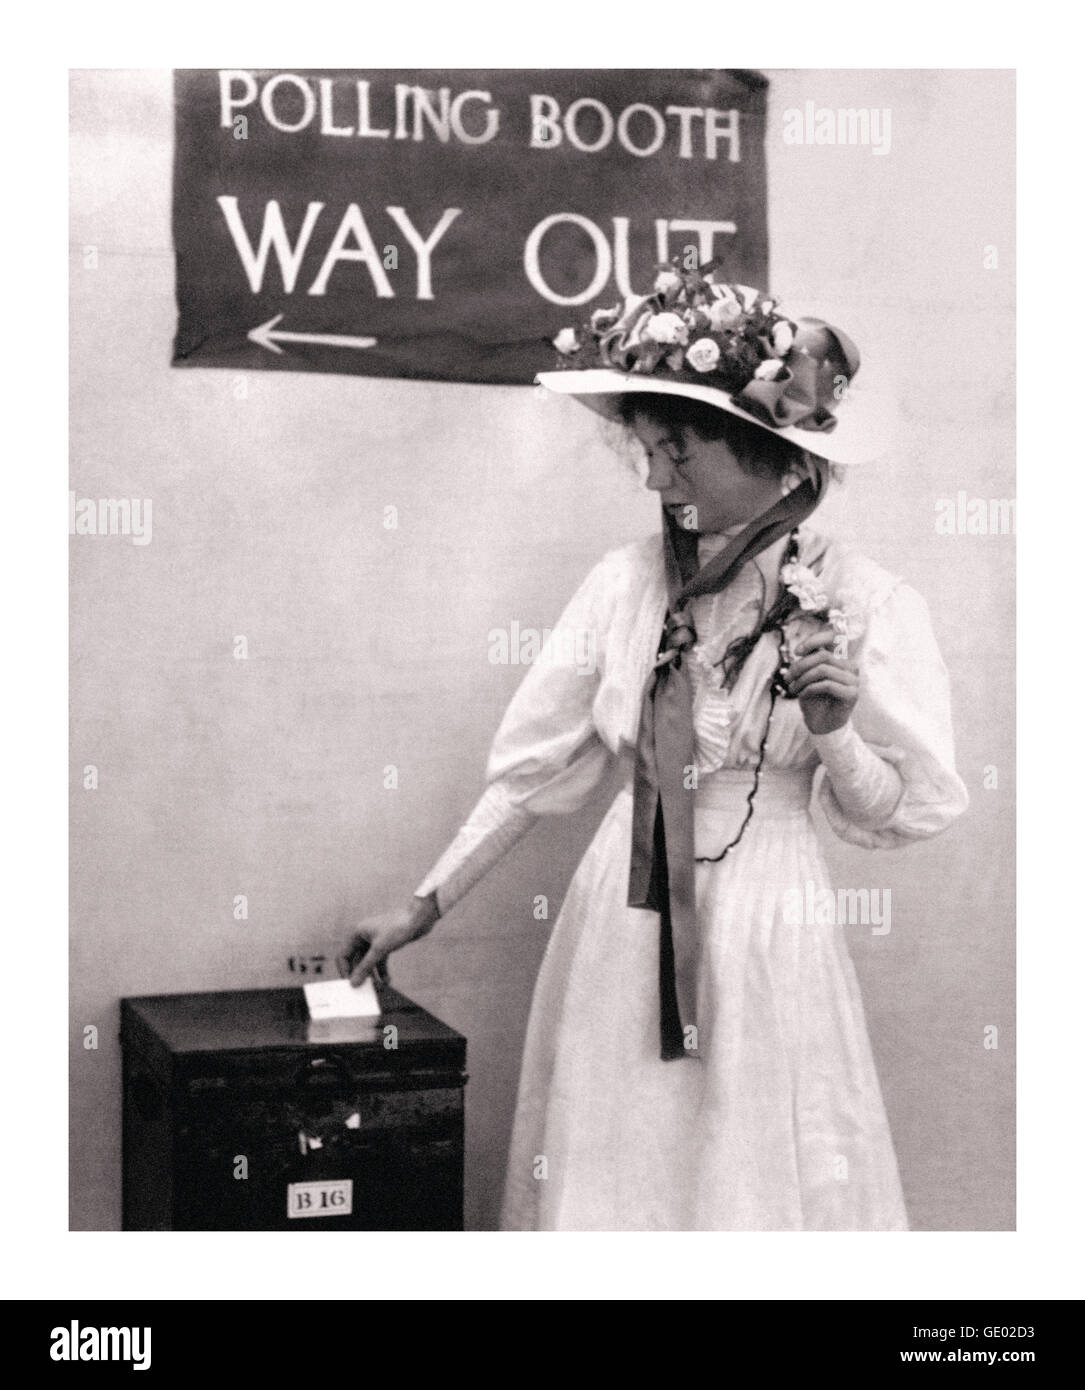 Suffragetten-Bewegung Emmeline Pankhurst in einer Wahlkabine um 1910. Sie war eine motivierende Führer der Bewegung, das Stimmrecht für Frauen gesichert Stockfoto